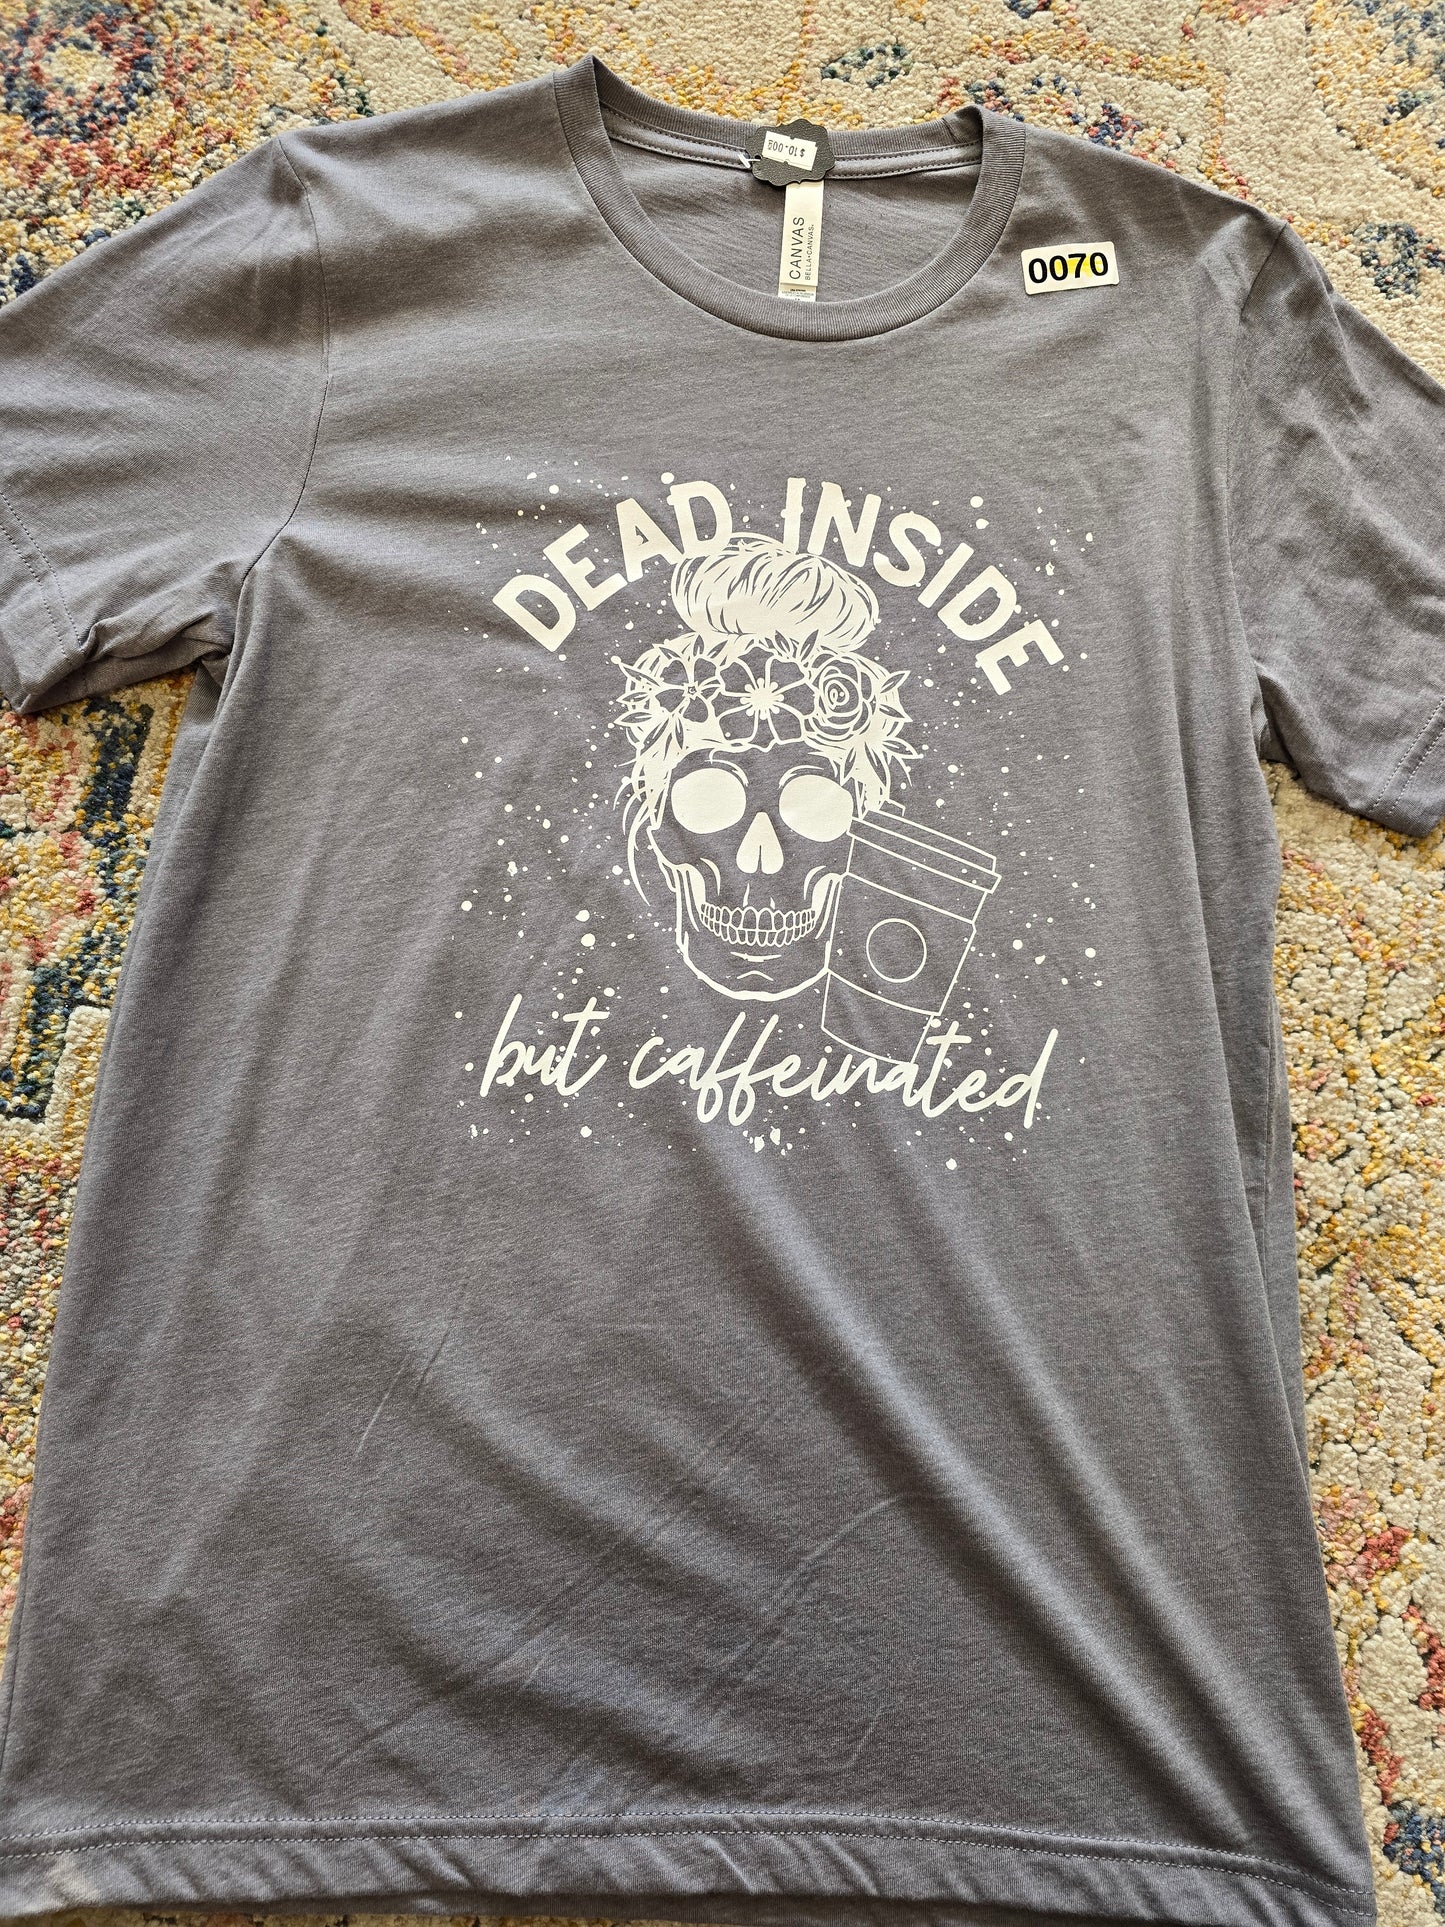 Medium $10 T-shirts